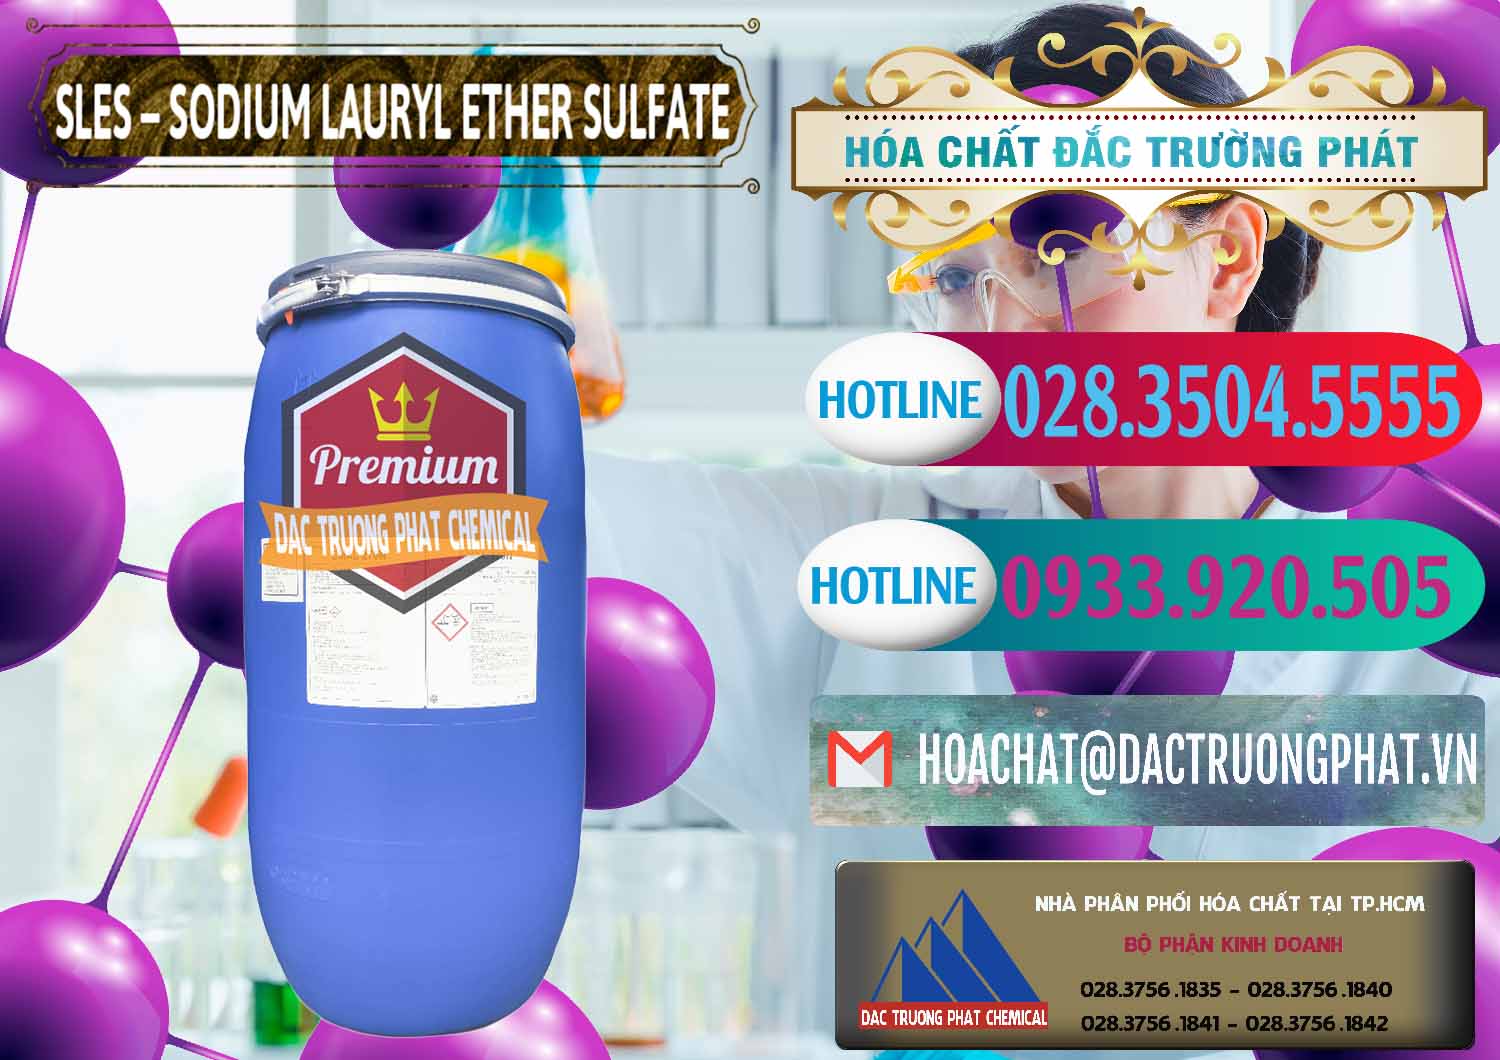 Công ty bán ( cung cấp ) Chất Tạo Bọt Sles - Sodium Lauryl Ether Sulphate Kao Indonesia - 0046 - Nơi chuyên kinh doanh và cung cấp hóa chất tại TP.HCM - truongphat.vn